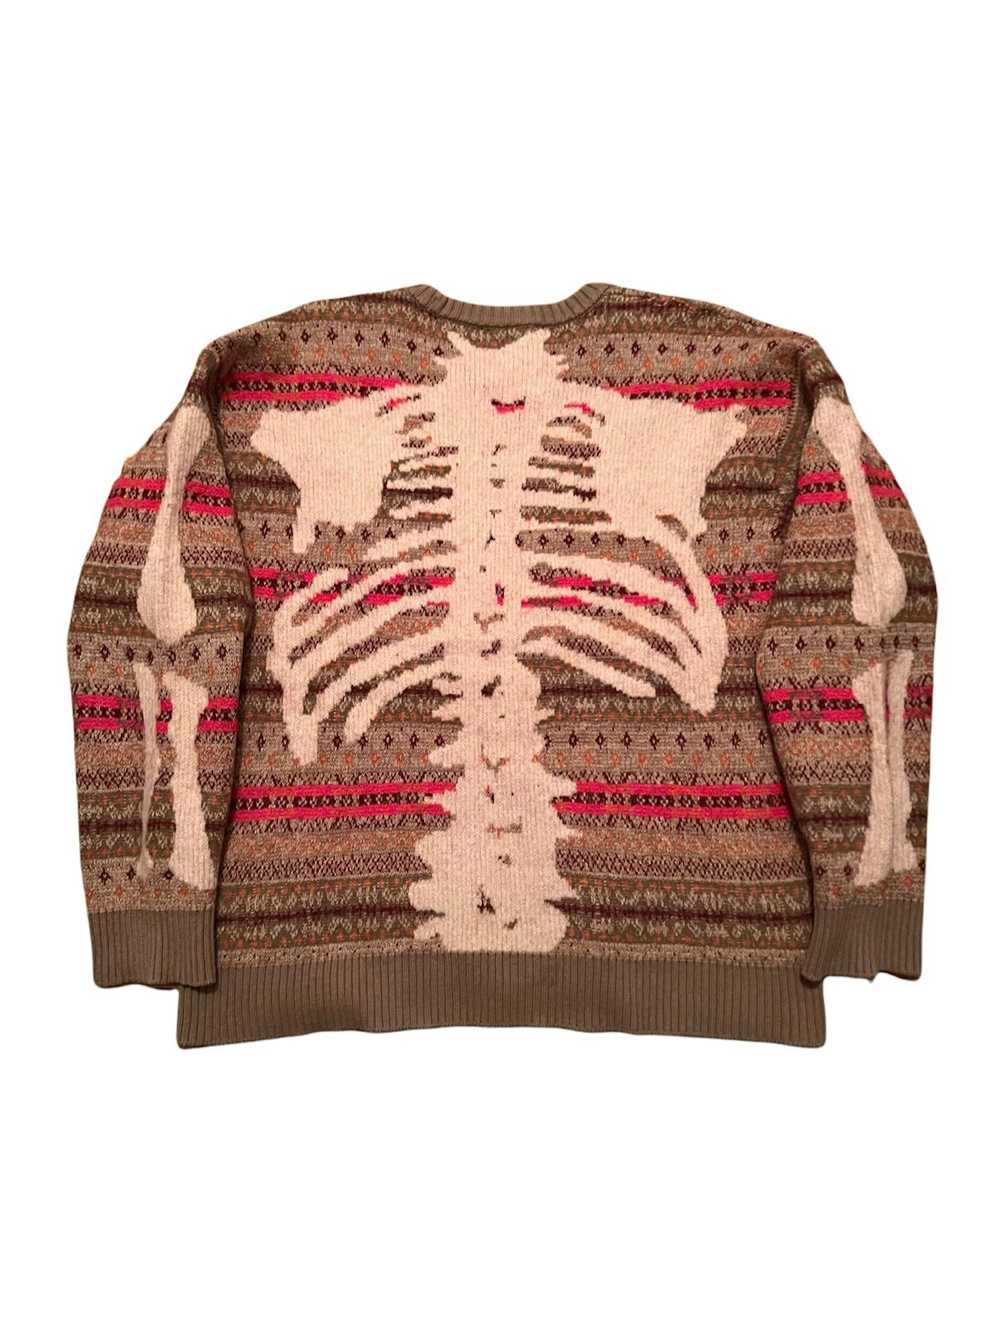 Kapital Kapital Skeleton Knit Sweater - image 1